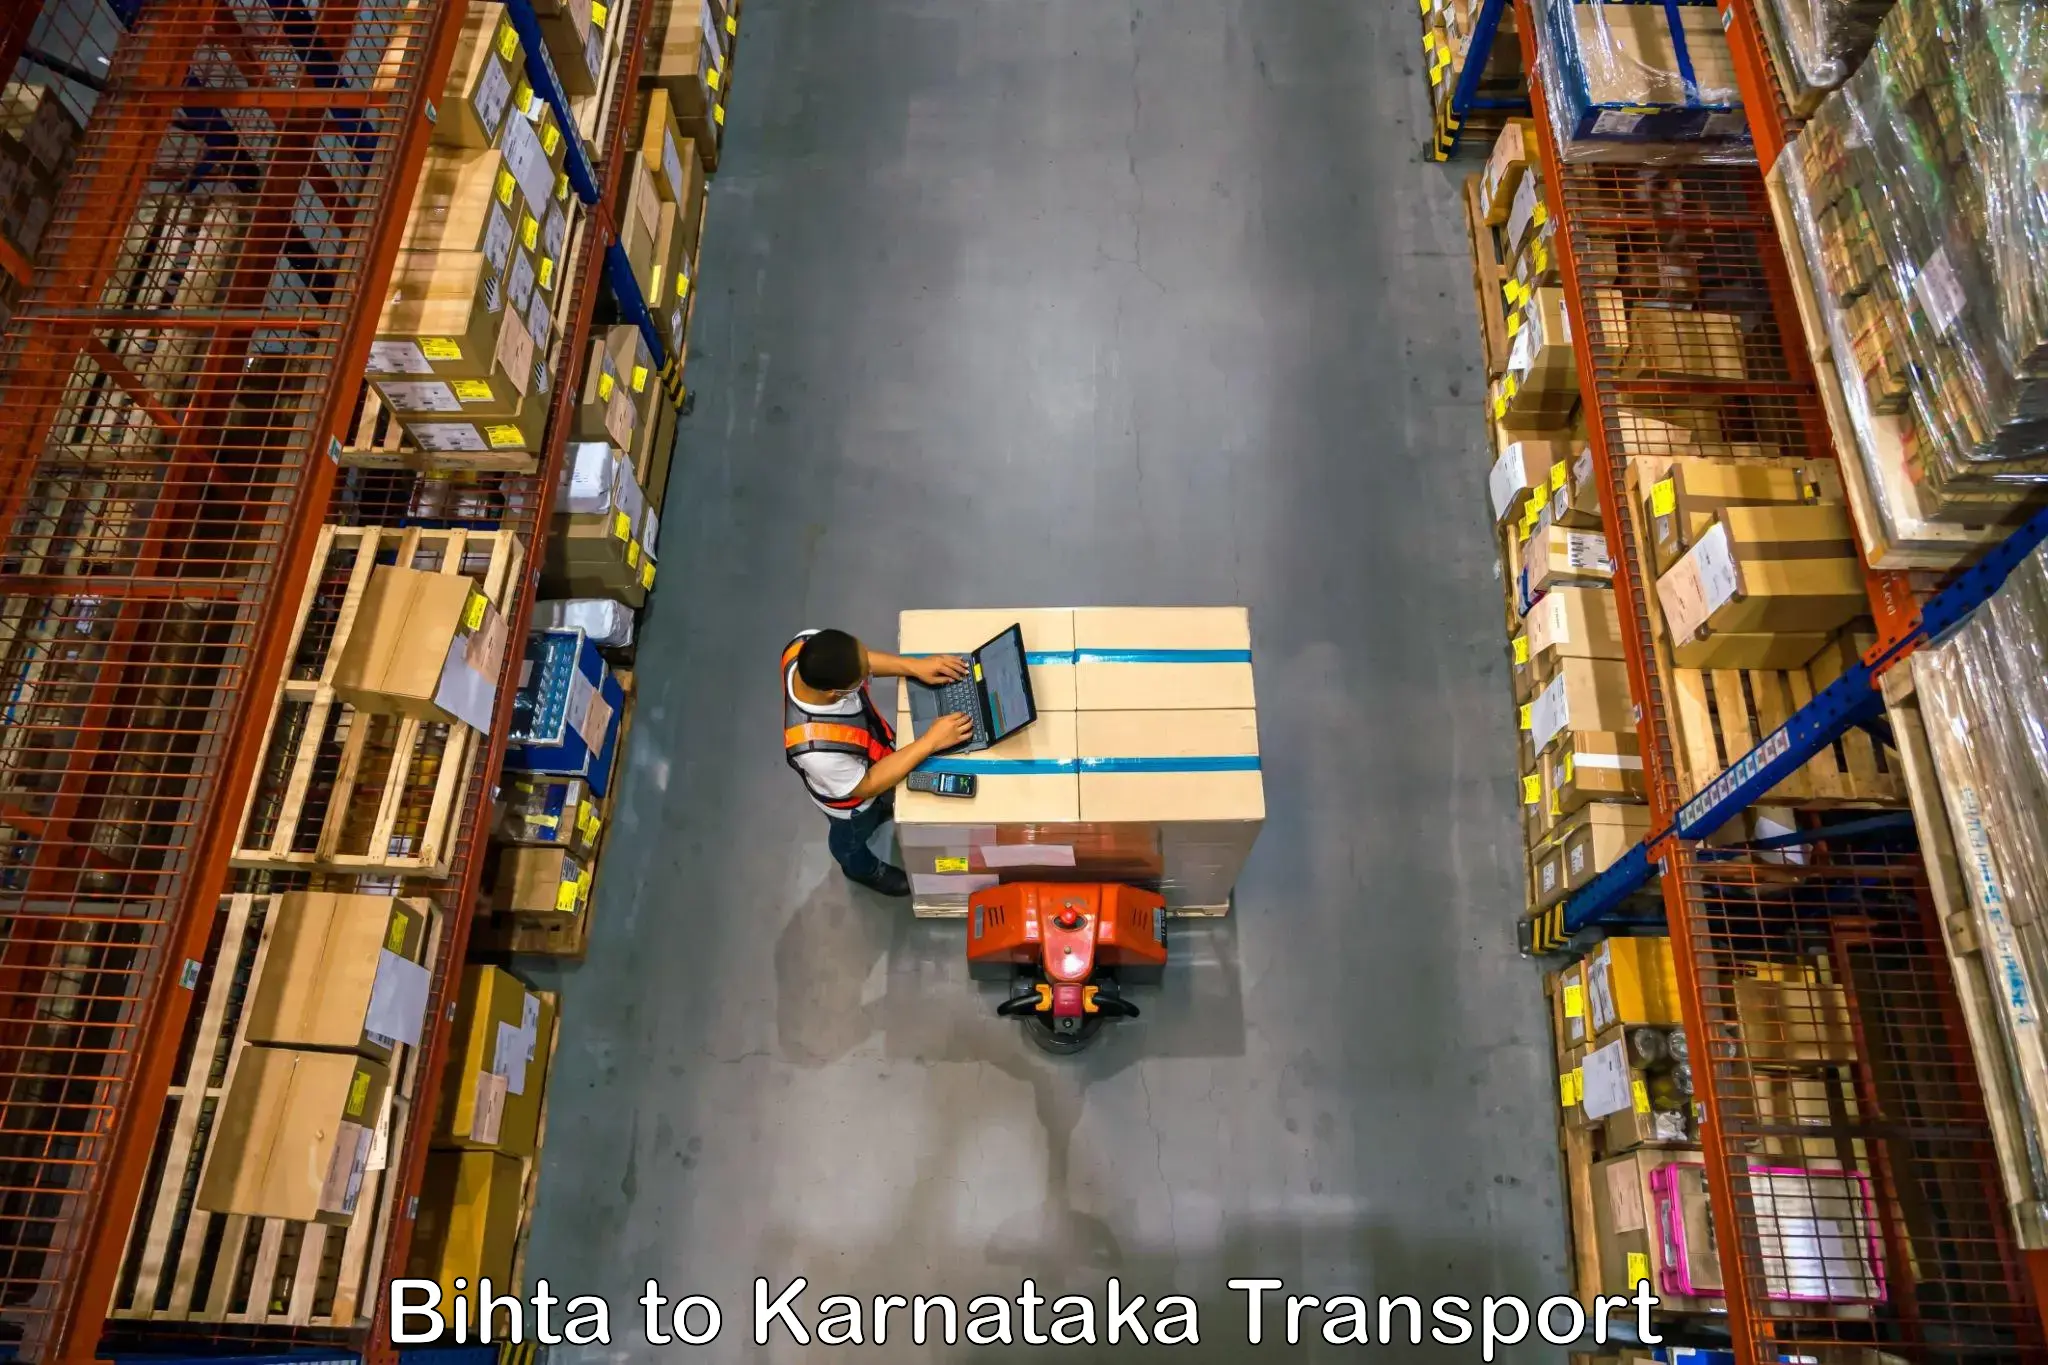 Online transport service Bihta to Kotturu